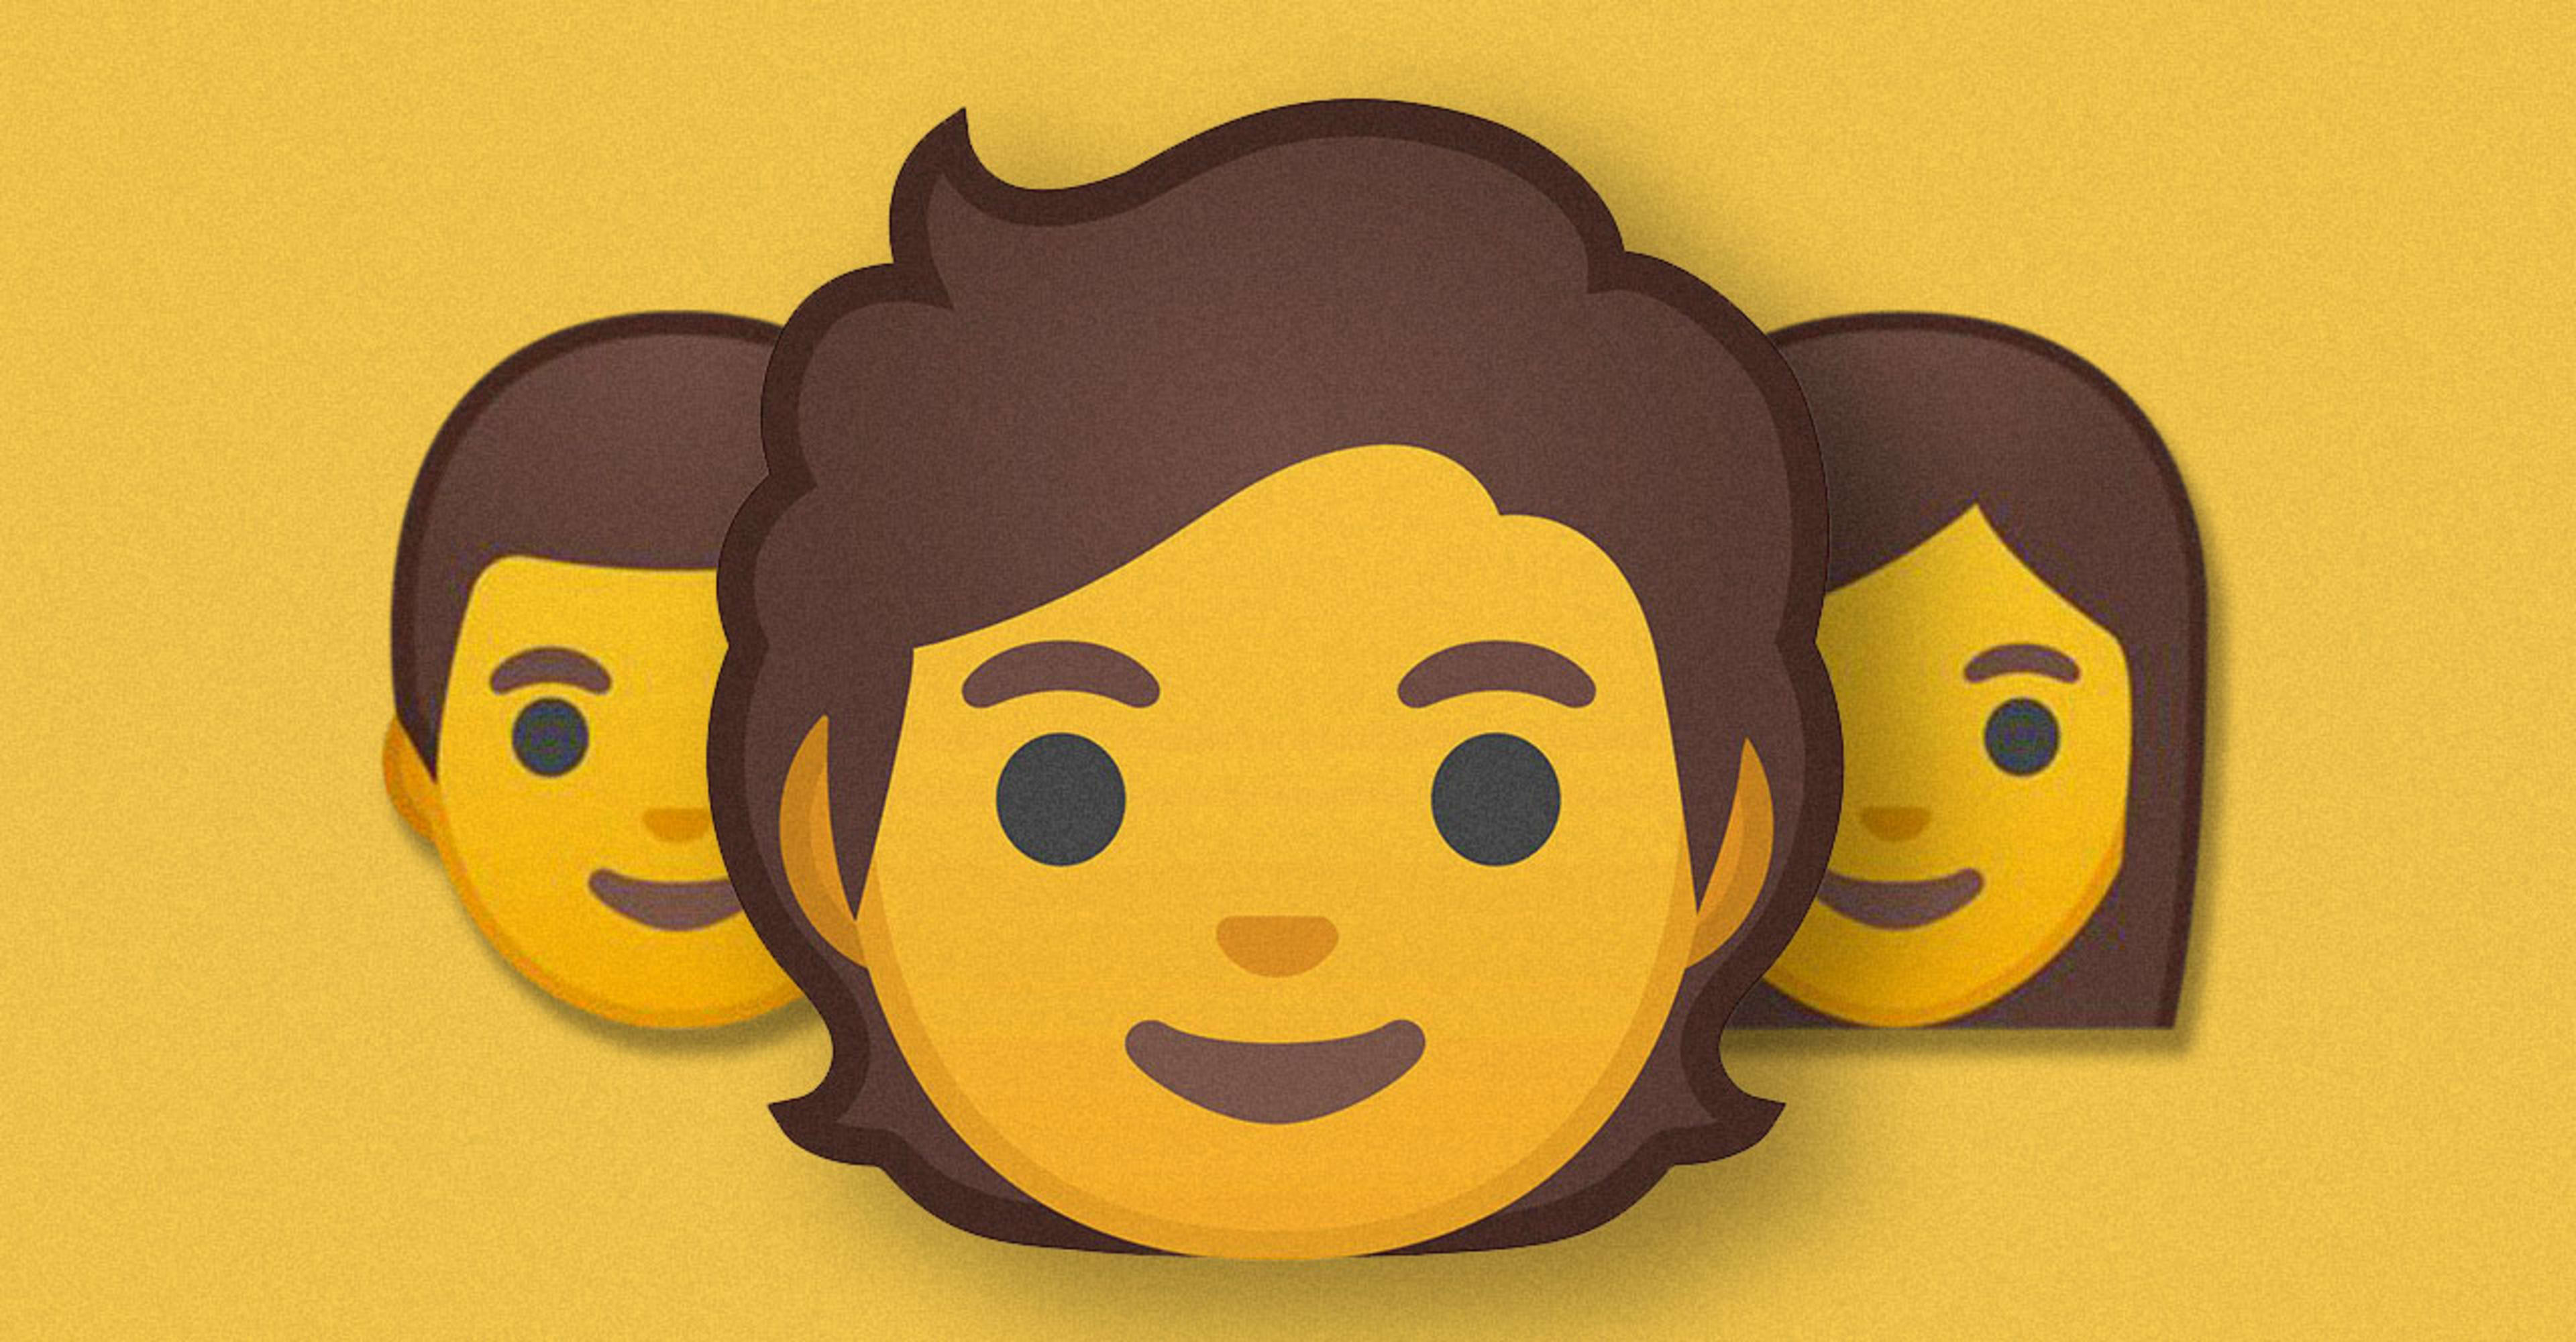 Exclusive: Google releases 53 gender fluid emoji